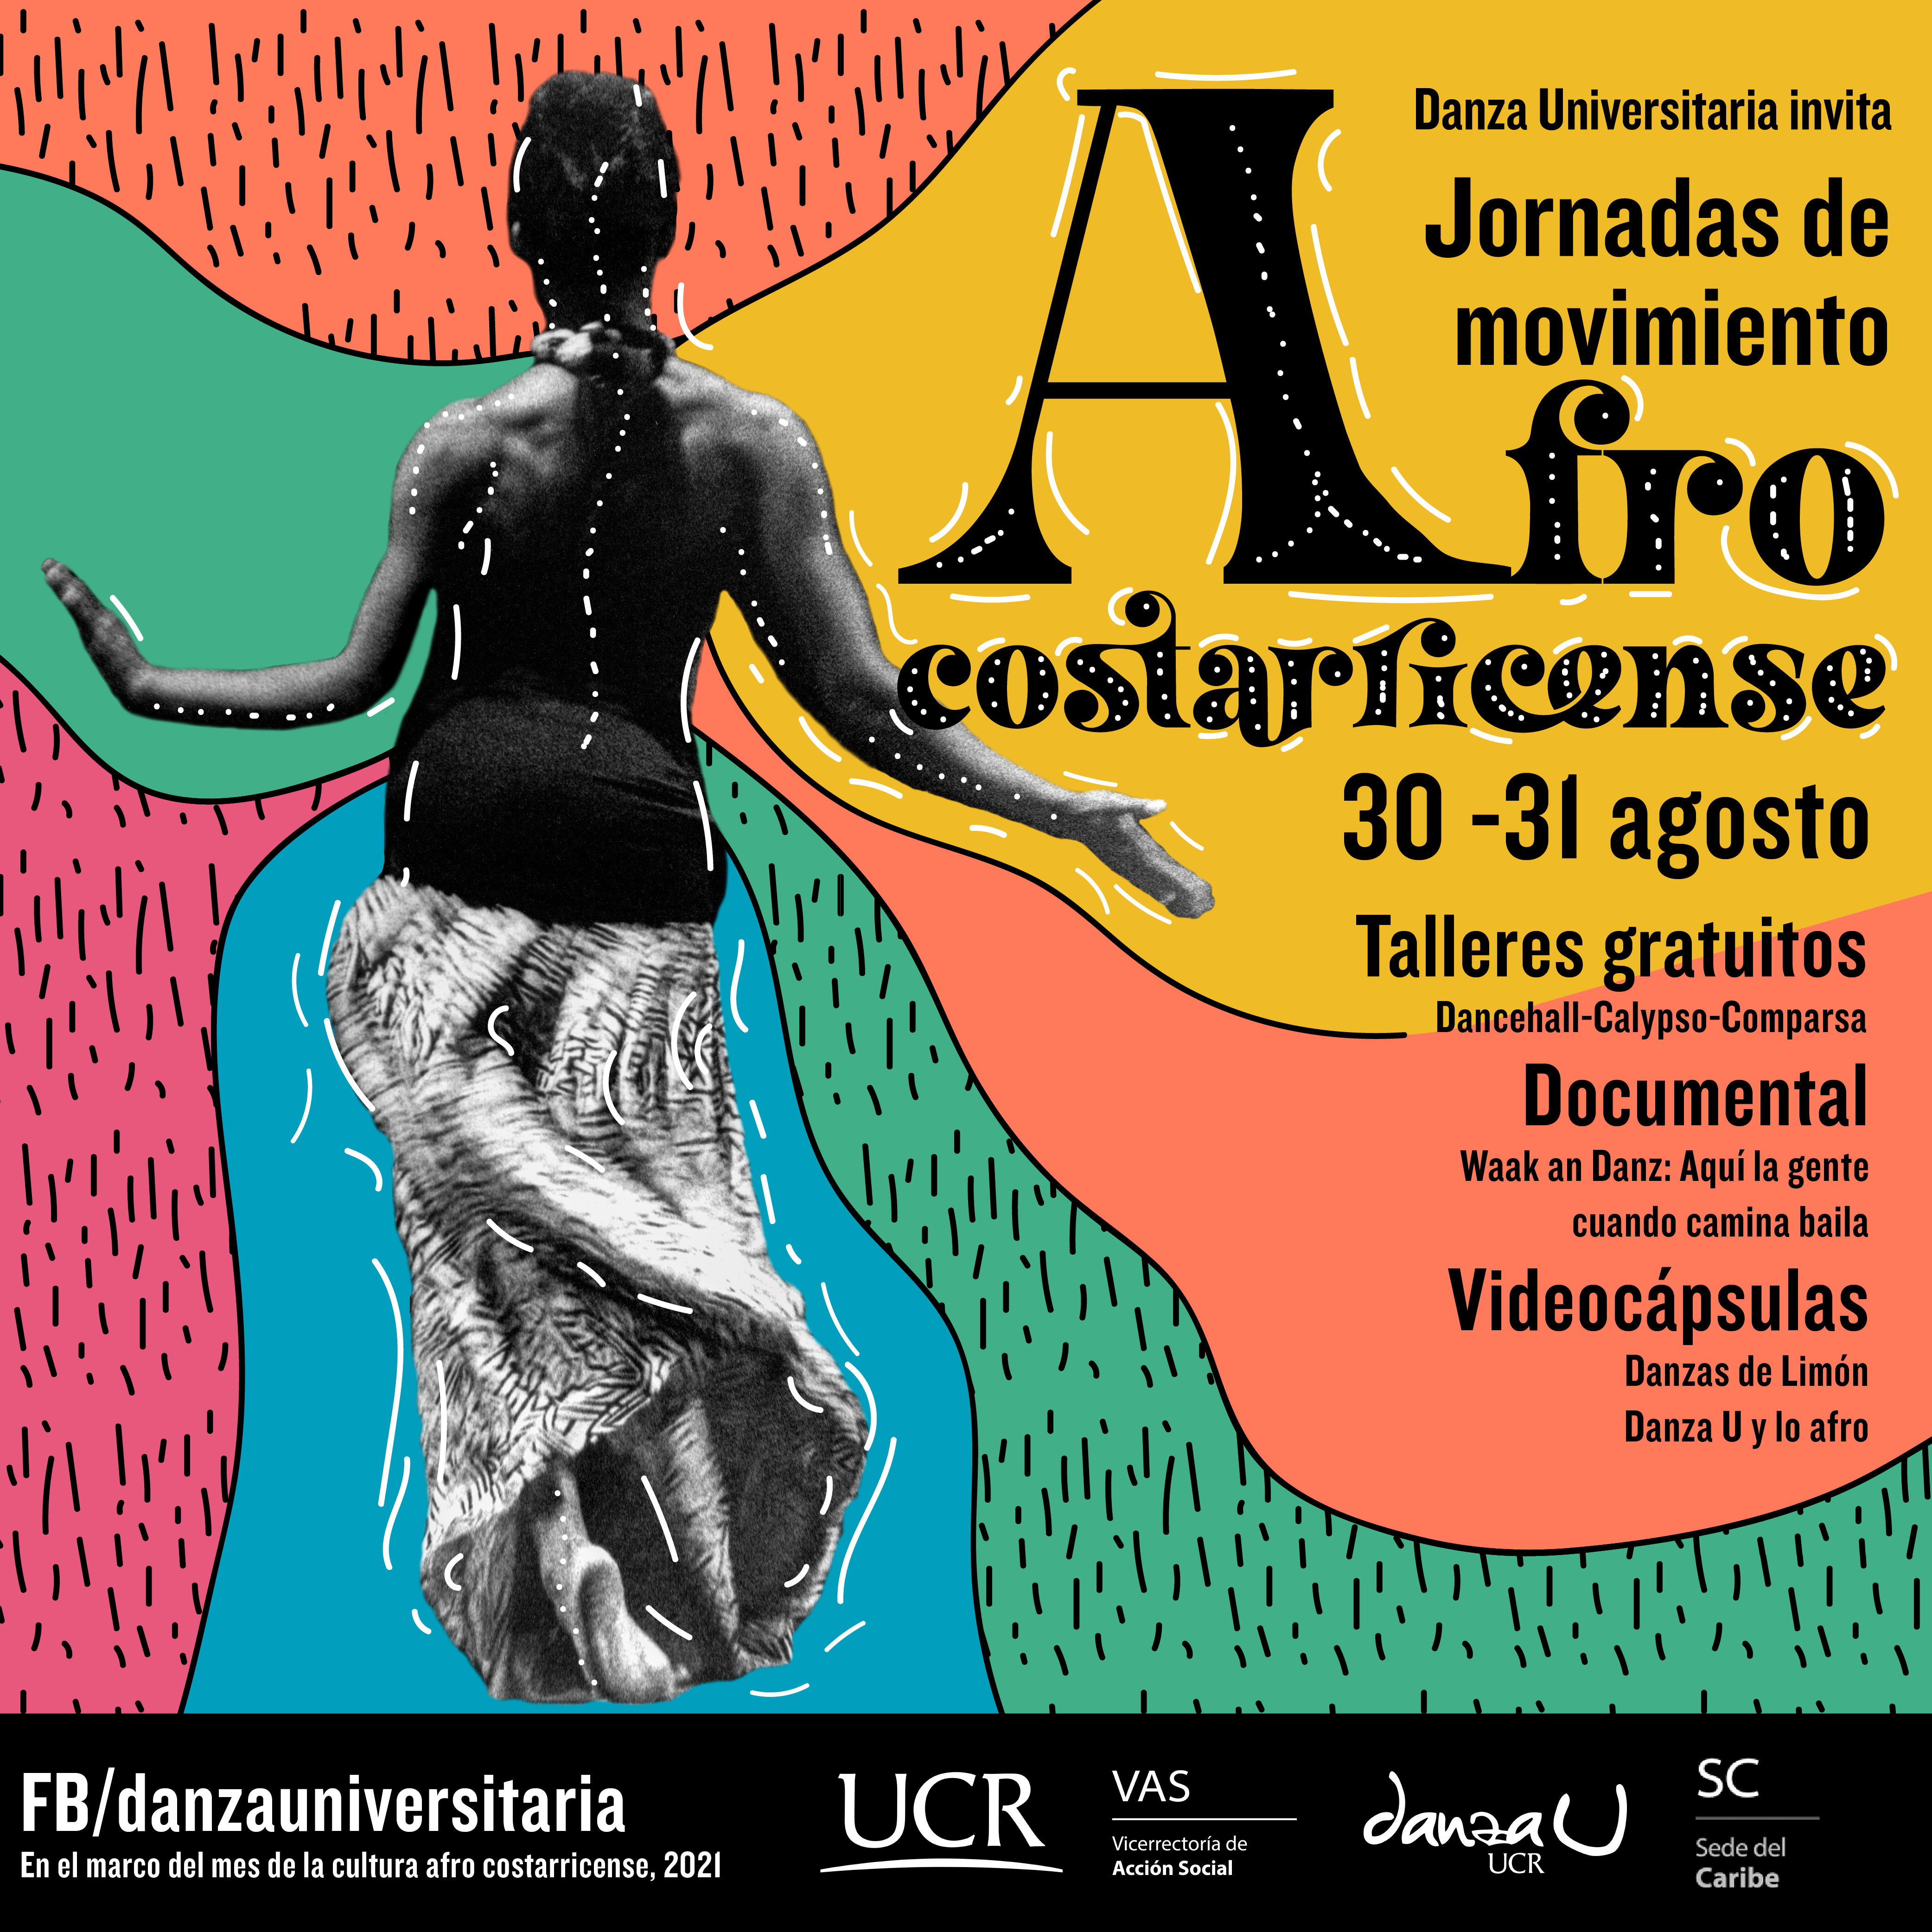  Las Jornadas de Movimiento Afrocostarricense son un espacio de visibilización y homenaje a esta herencia cultural, a través de piezas audiovisuales y talleres de danzas afrocaribeñas.